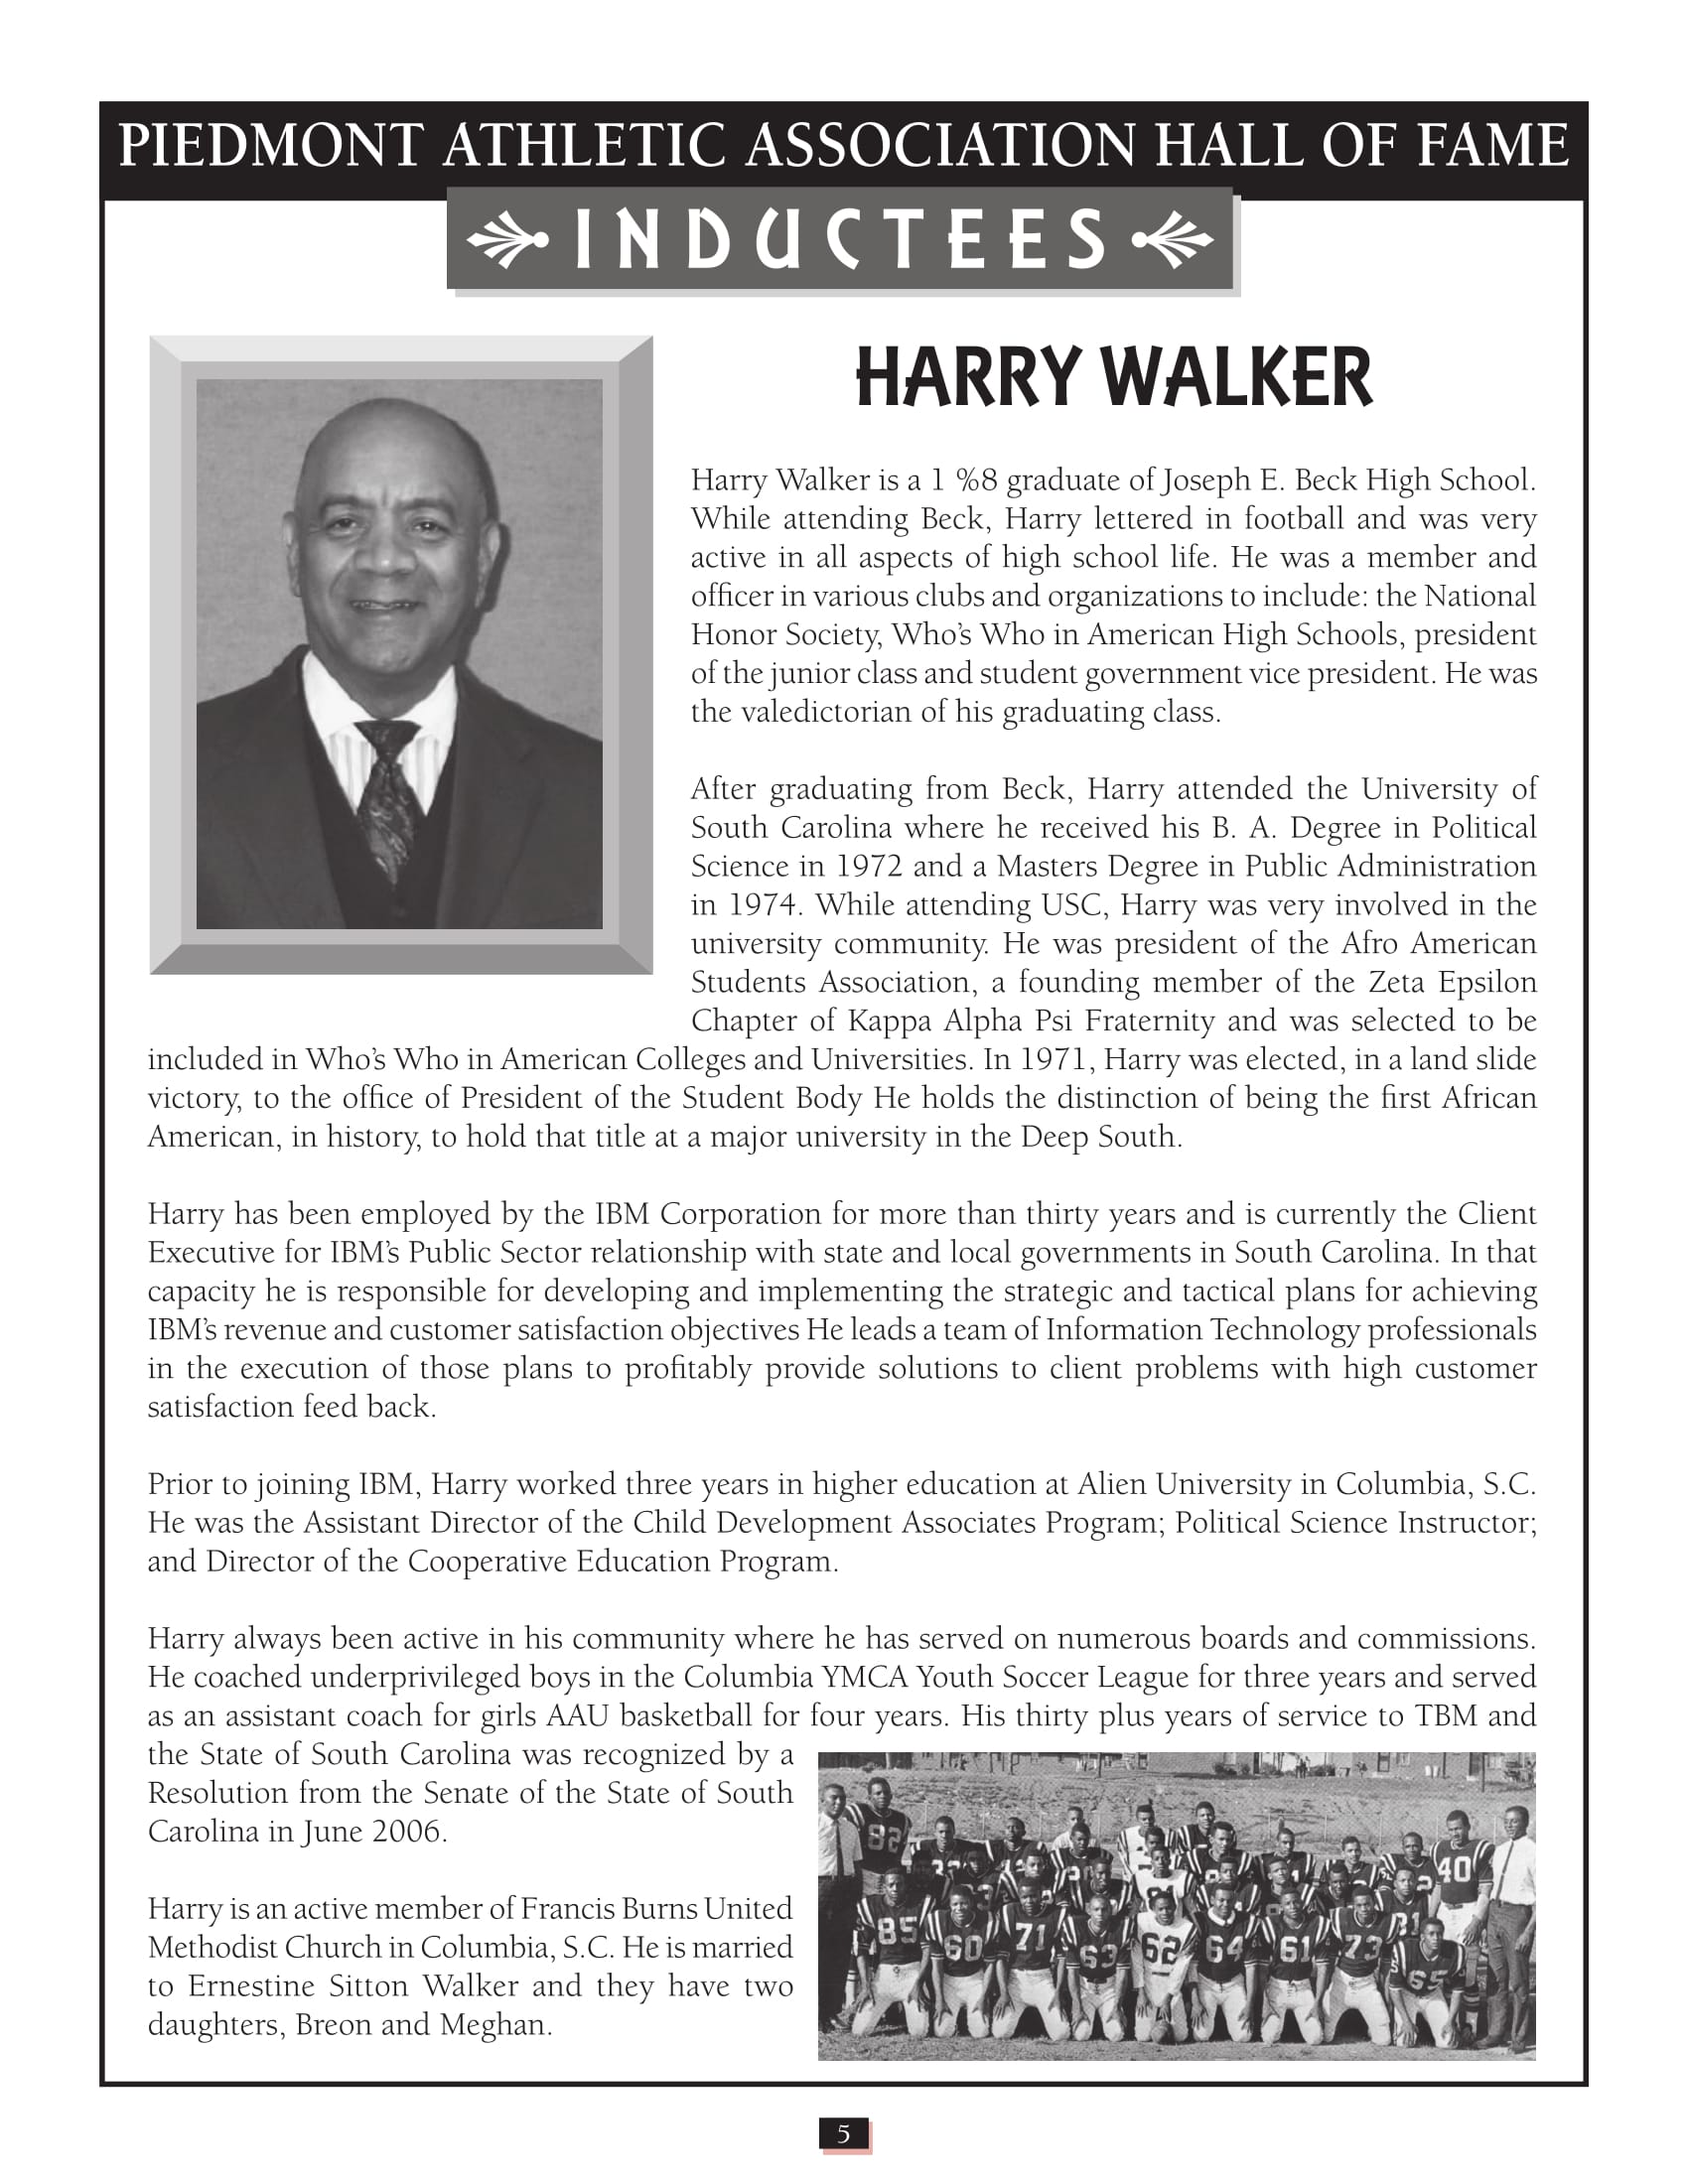 Harry Walker